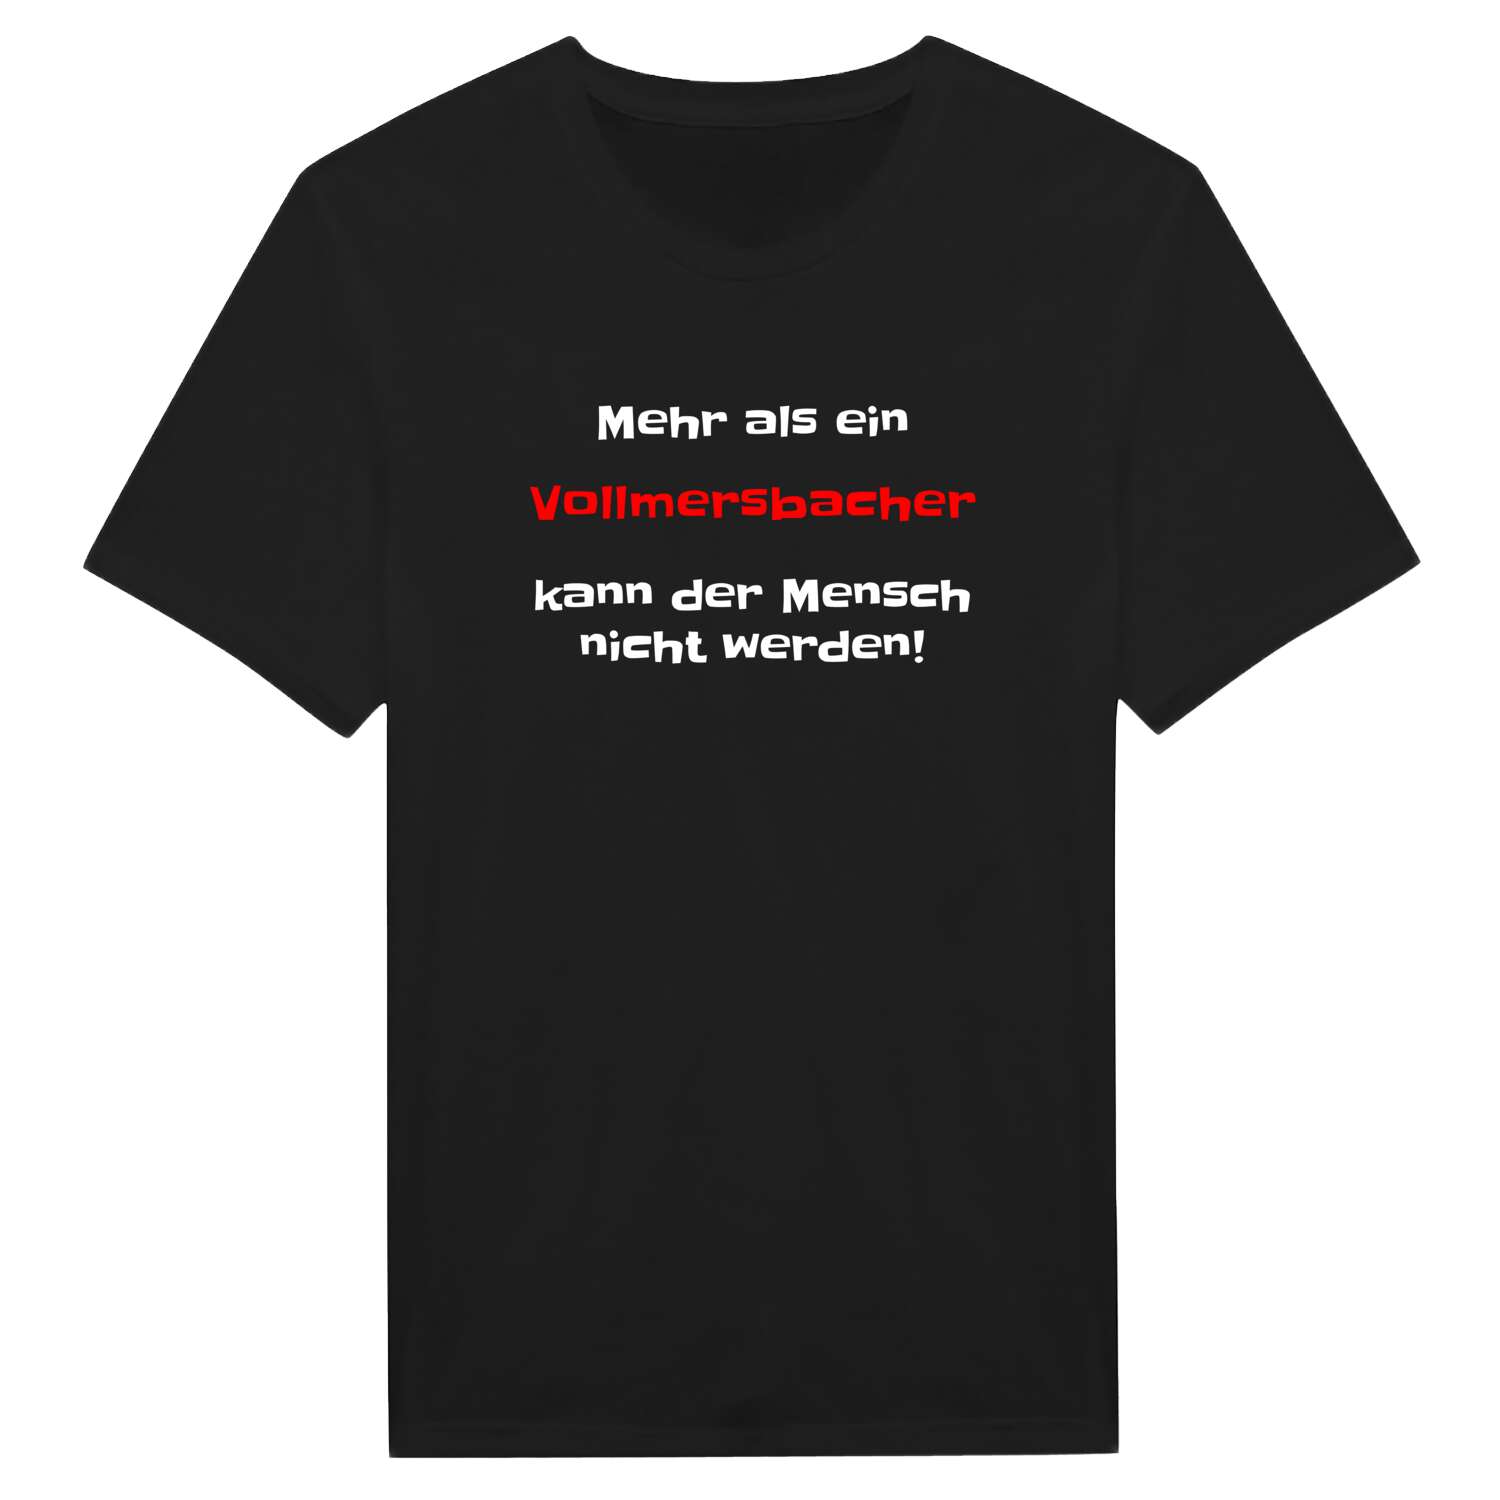 Vollmersbach T-Shirt »Mehr als ein«